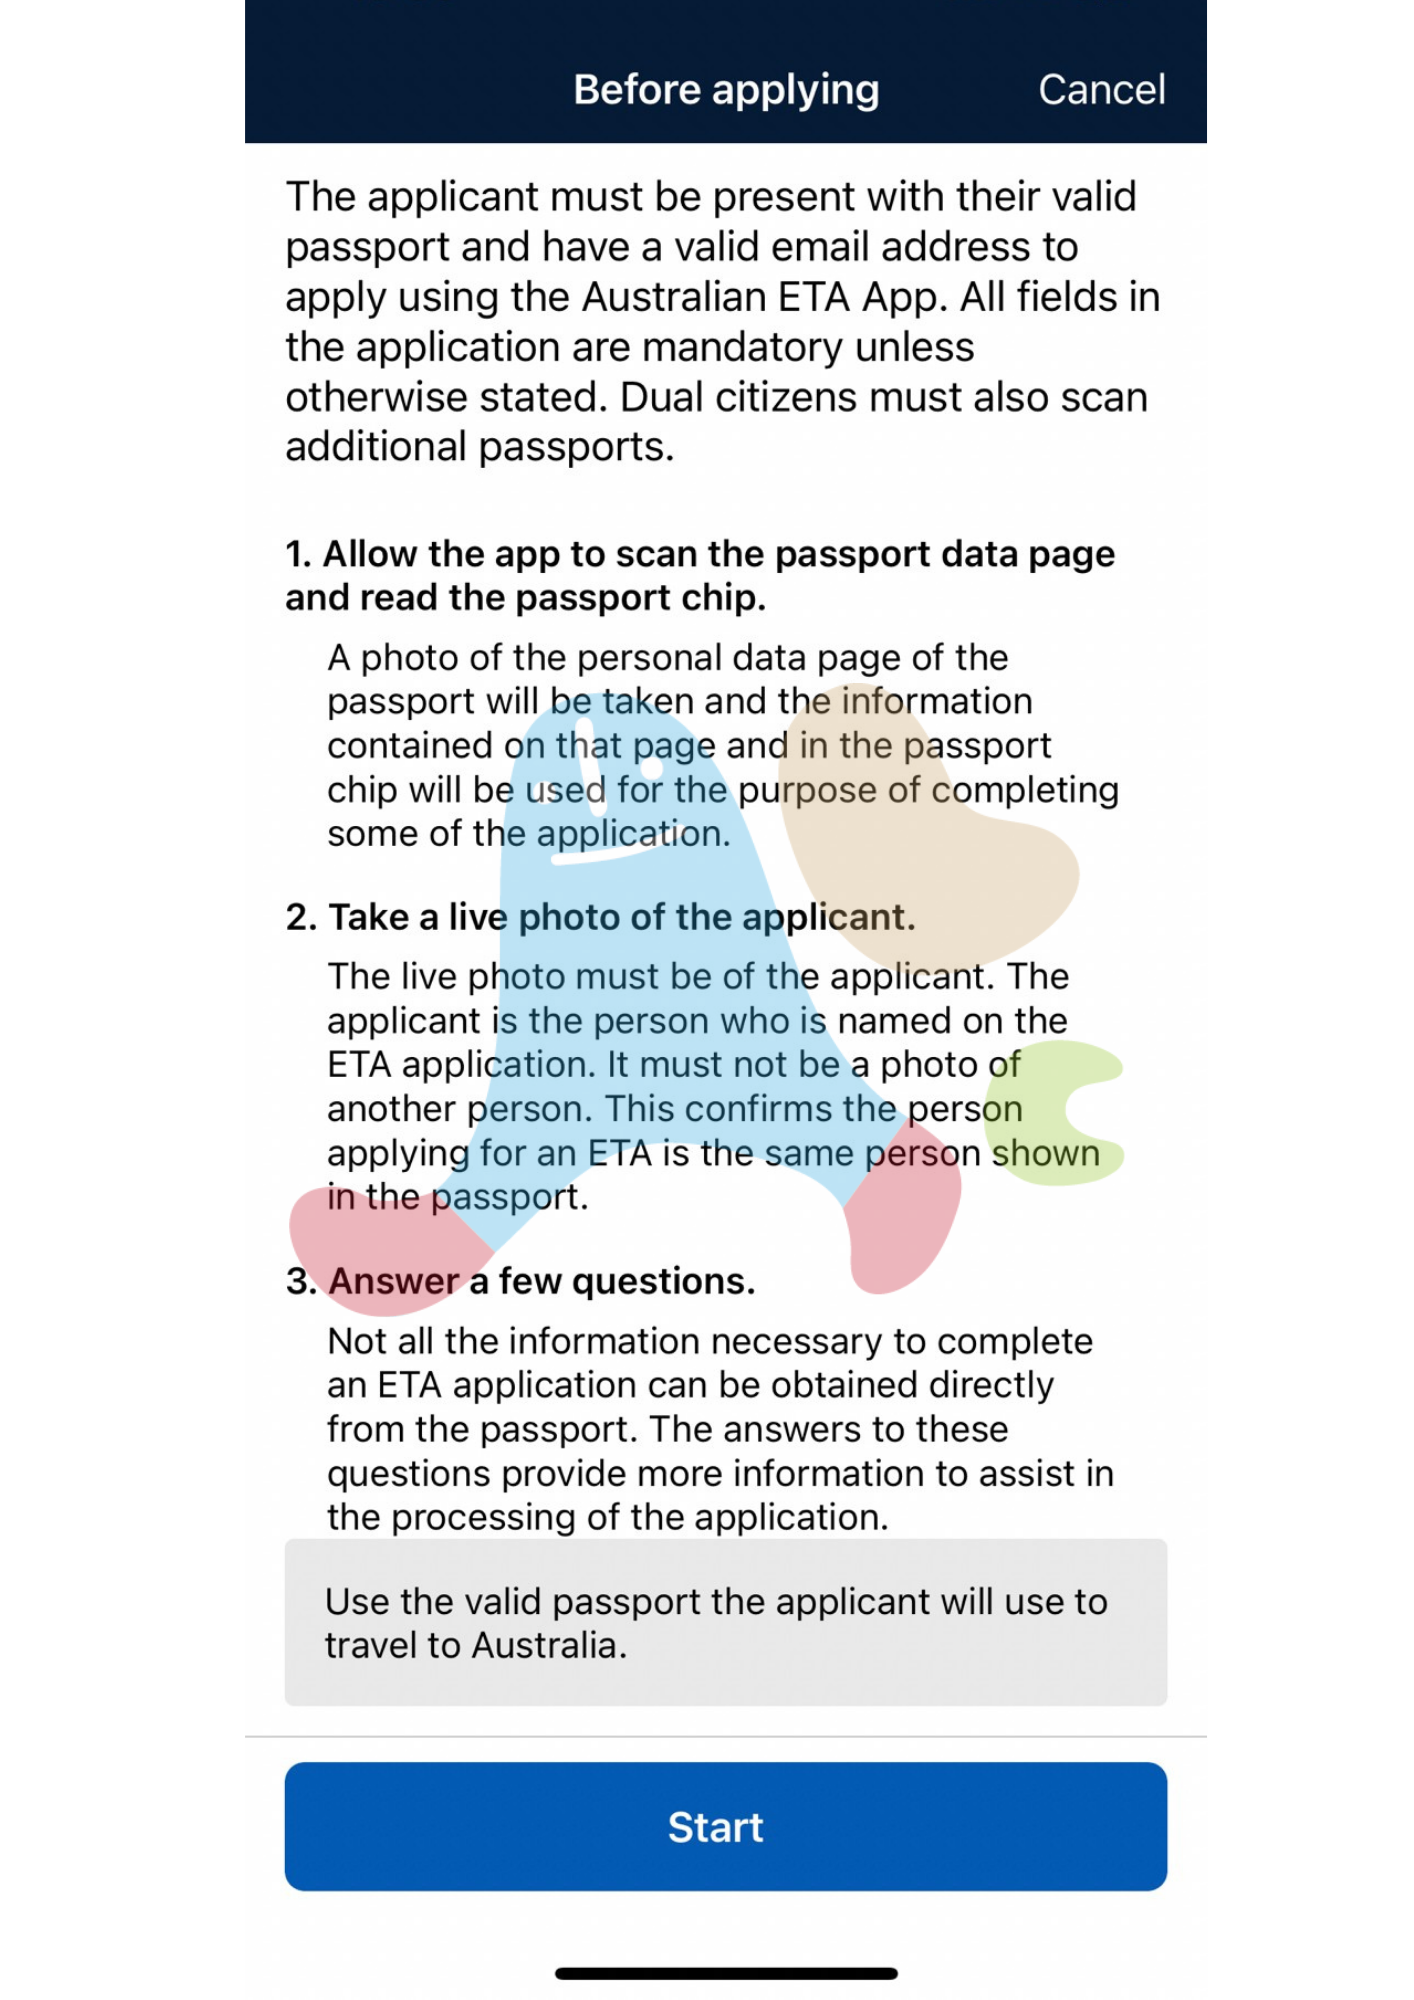 澳洲旅遊簽證AustraliaETA app-護照與其他資料的提供說明